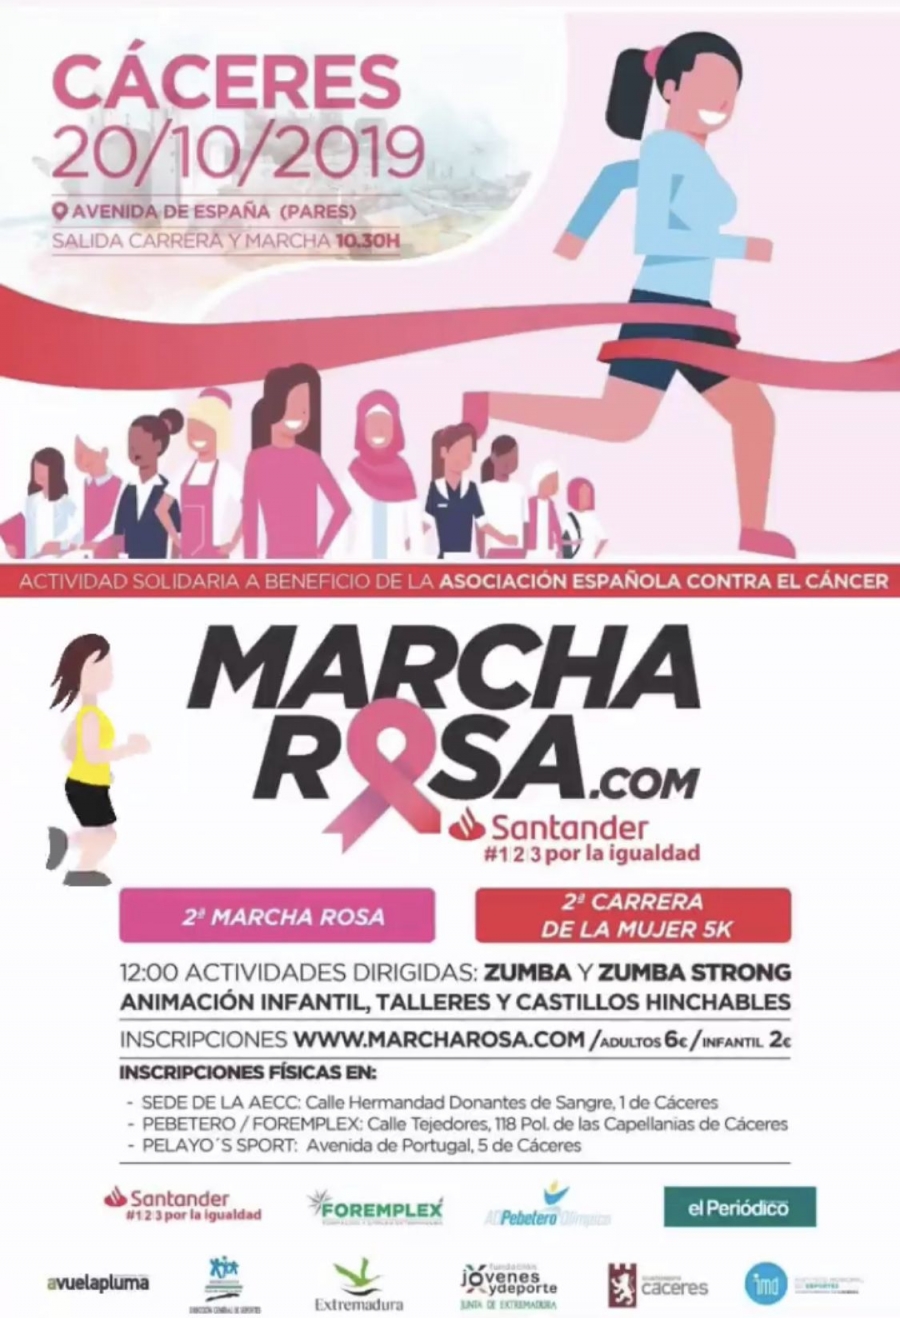 Marcha Rosa.com